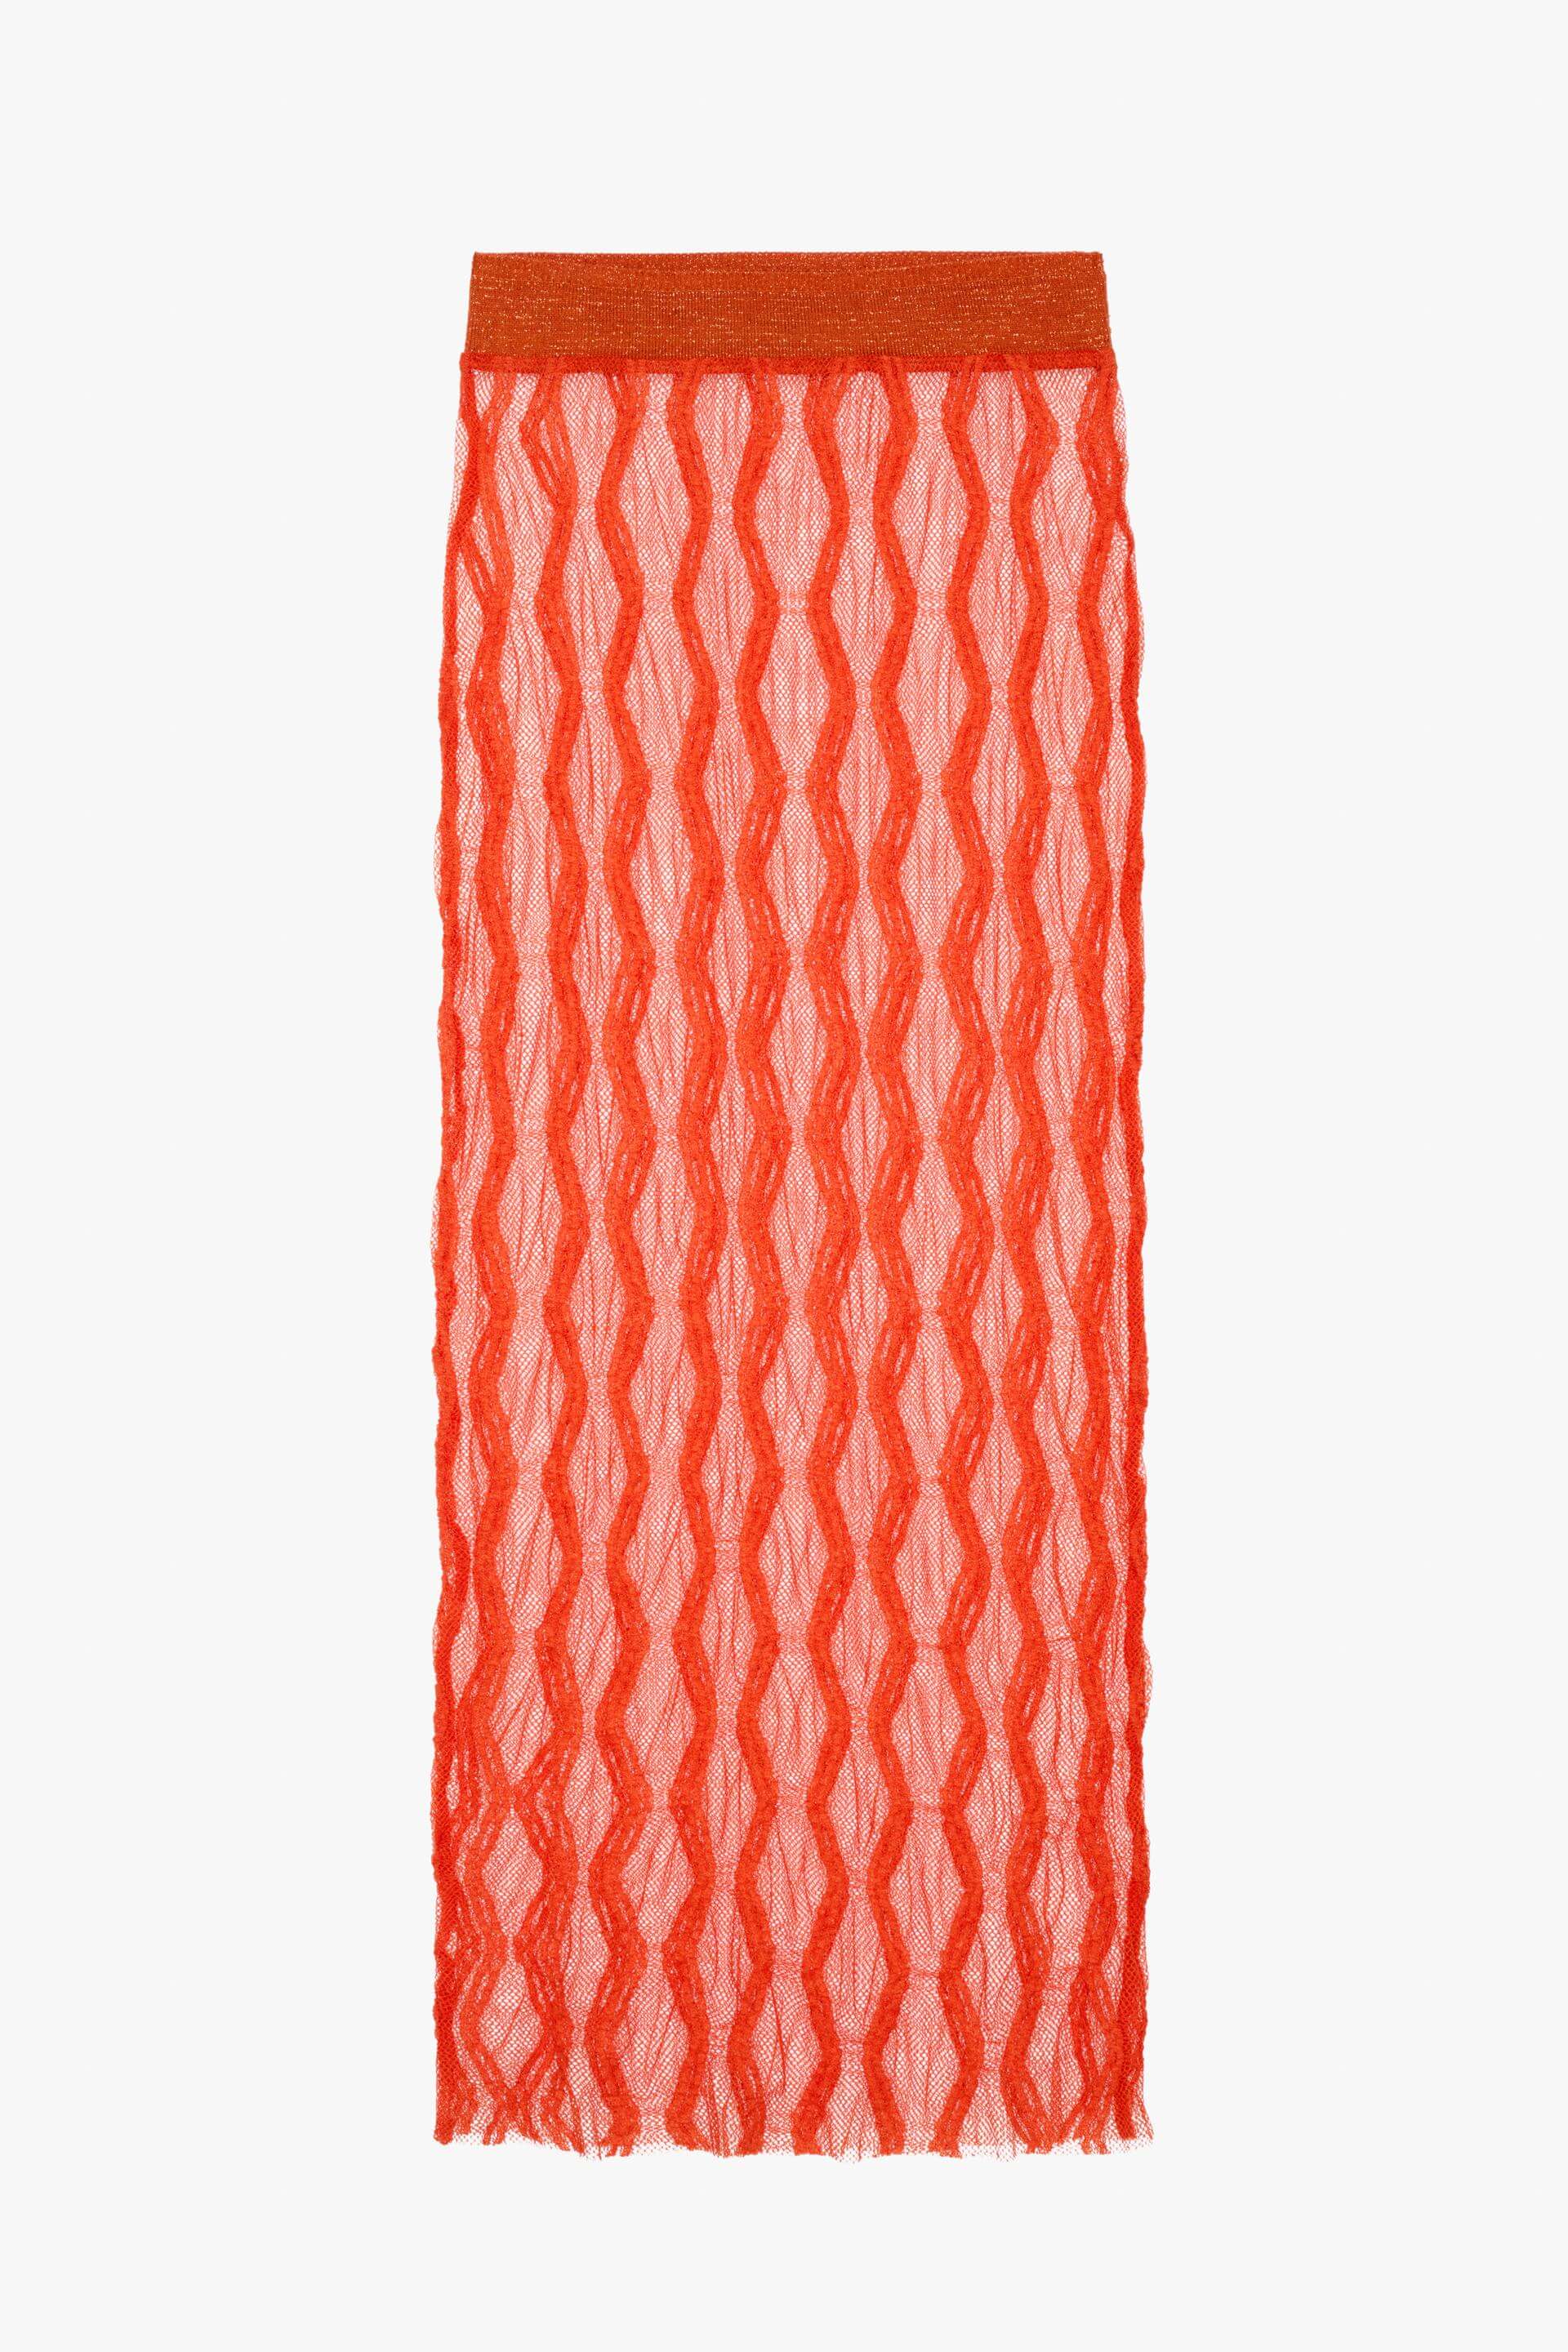 Юбка Zara Knit - Limited Edition, оранжевый юбка миди женская винтажная с поясом высокой талией и разрезом